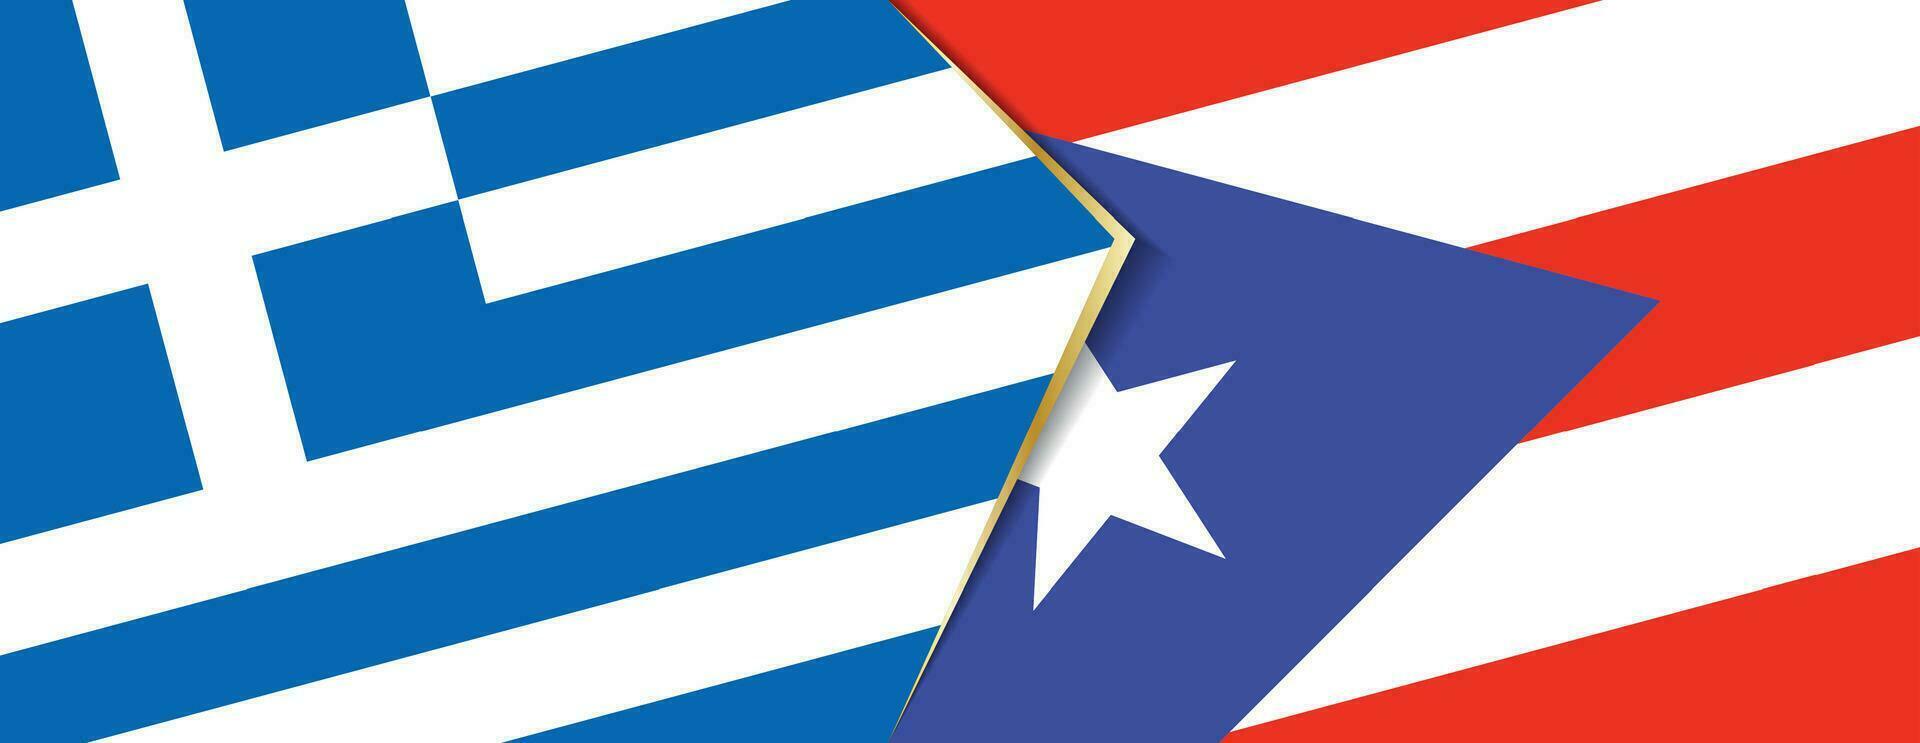 Grecia y puerto rico banderas, dos vector banderas